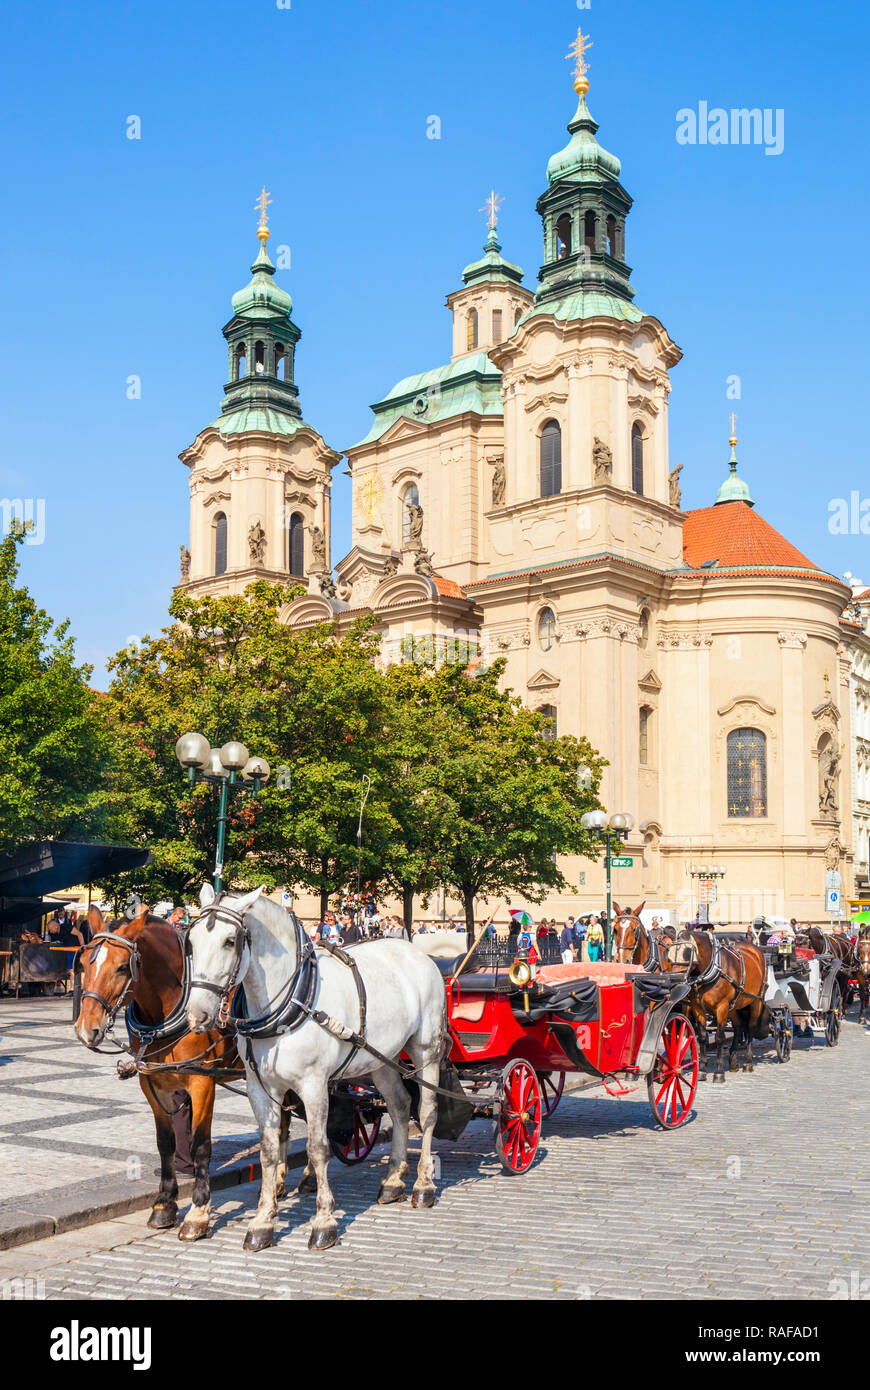 St Nicholas church Prague Prague et promenades en calèche à partir de la place de la vieille ville Staroměstské náměstí Prague République Tchèque Europe Banque D'Images